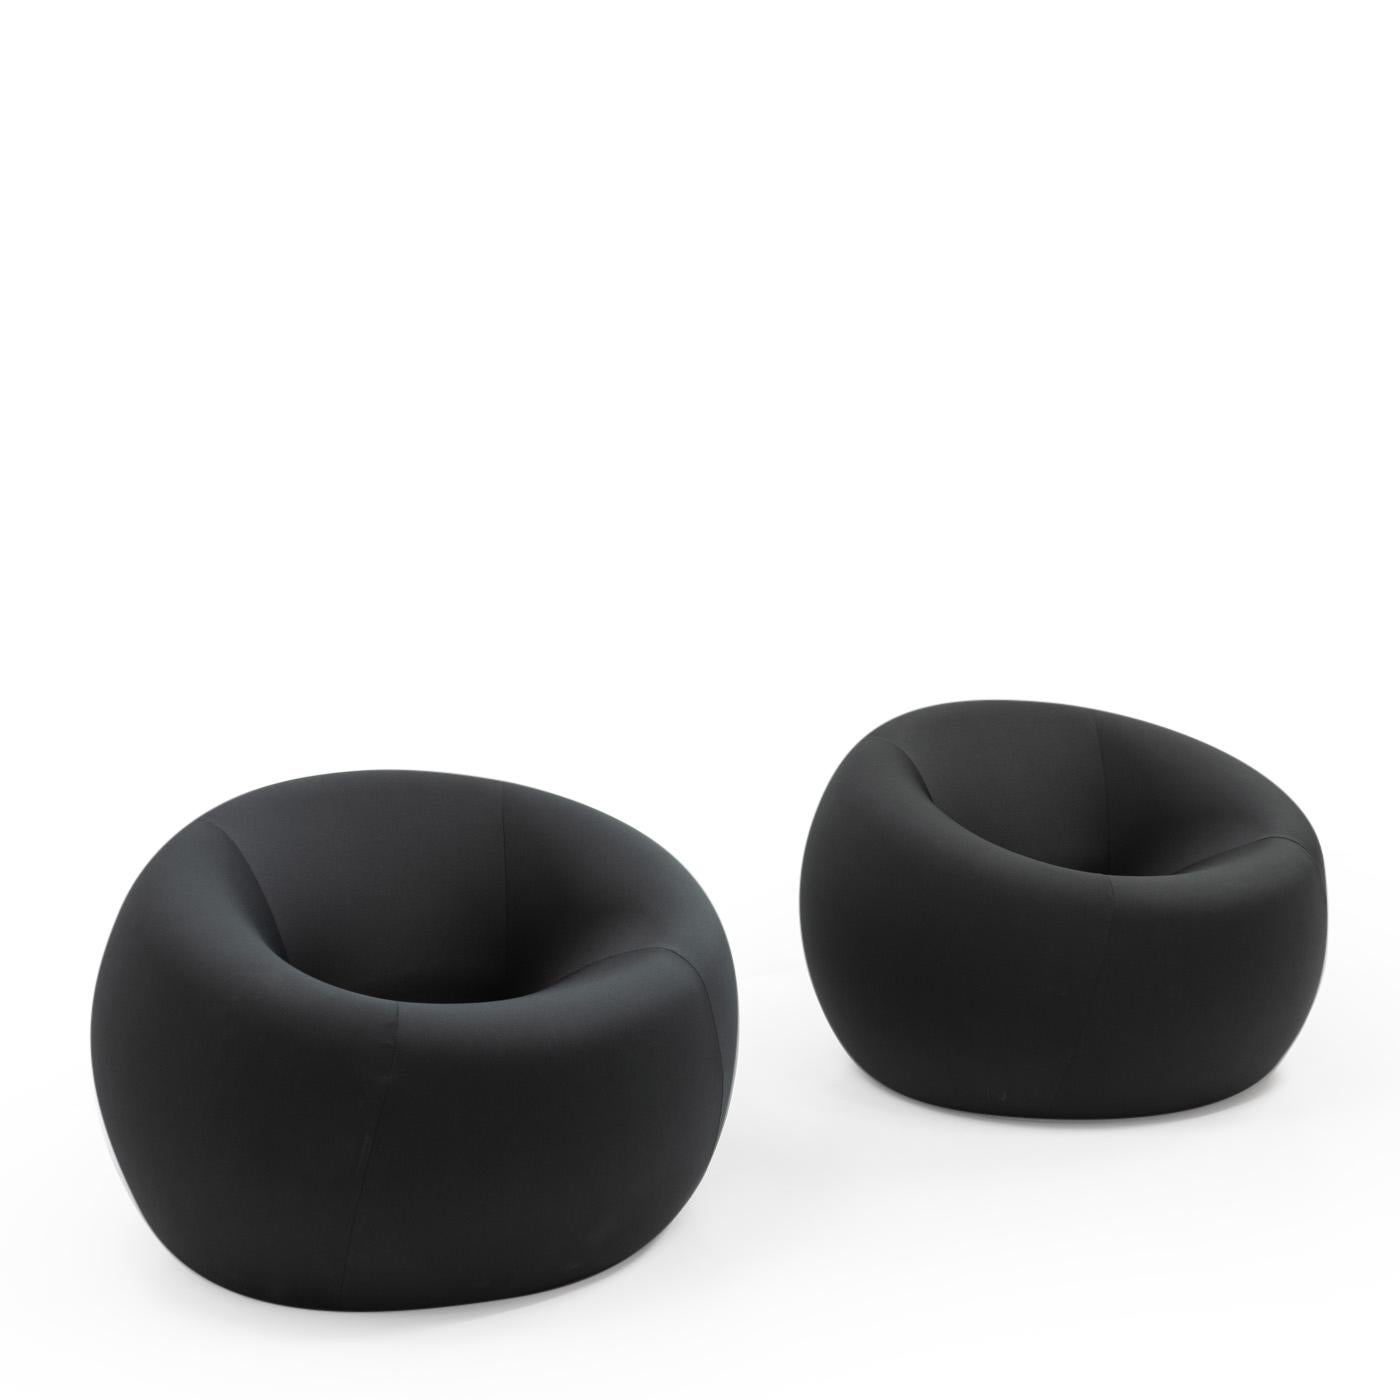 Chaises longues UP1, conçues  en 1969 par Gaetano Pesce pour C&B Italia (aujourd'hui B&B Italia) :

Ces chaises longues sont connues pour leur forme ronde sculpturale caractéristique et, grâce à leur structure entièrement constituée de mousse de